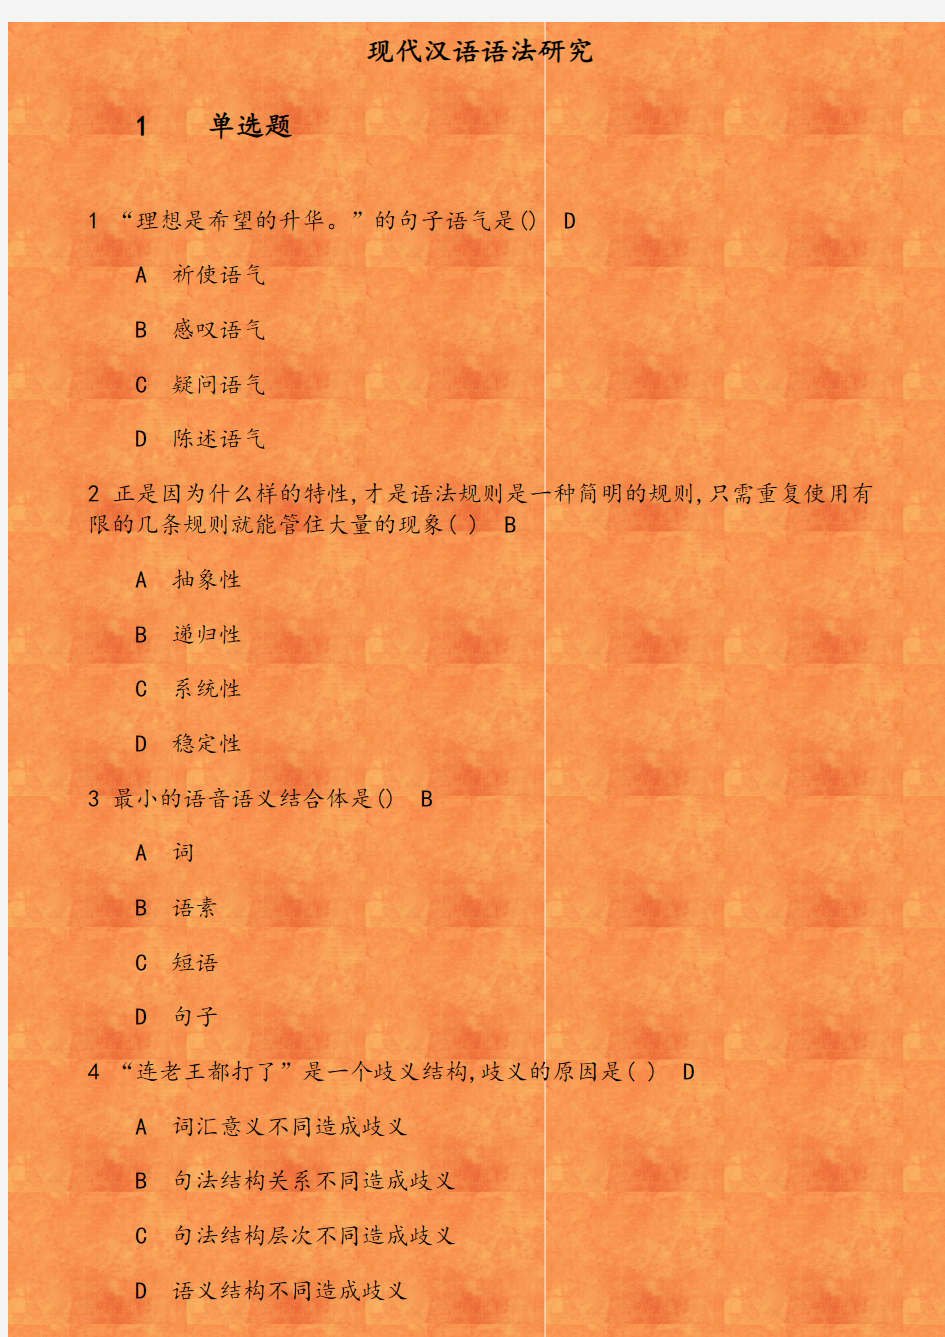 华师《现代汉语语法研究》在线作业 参考资料